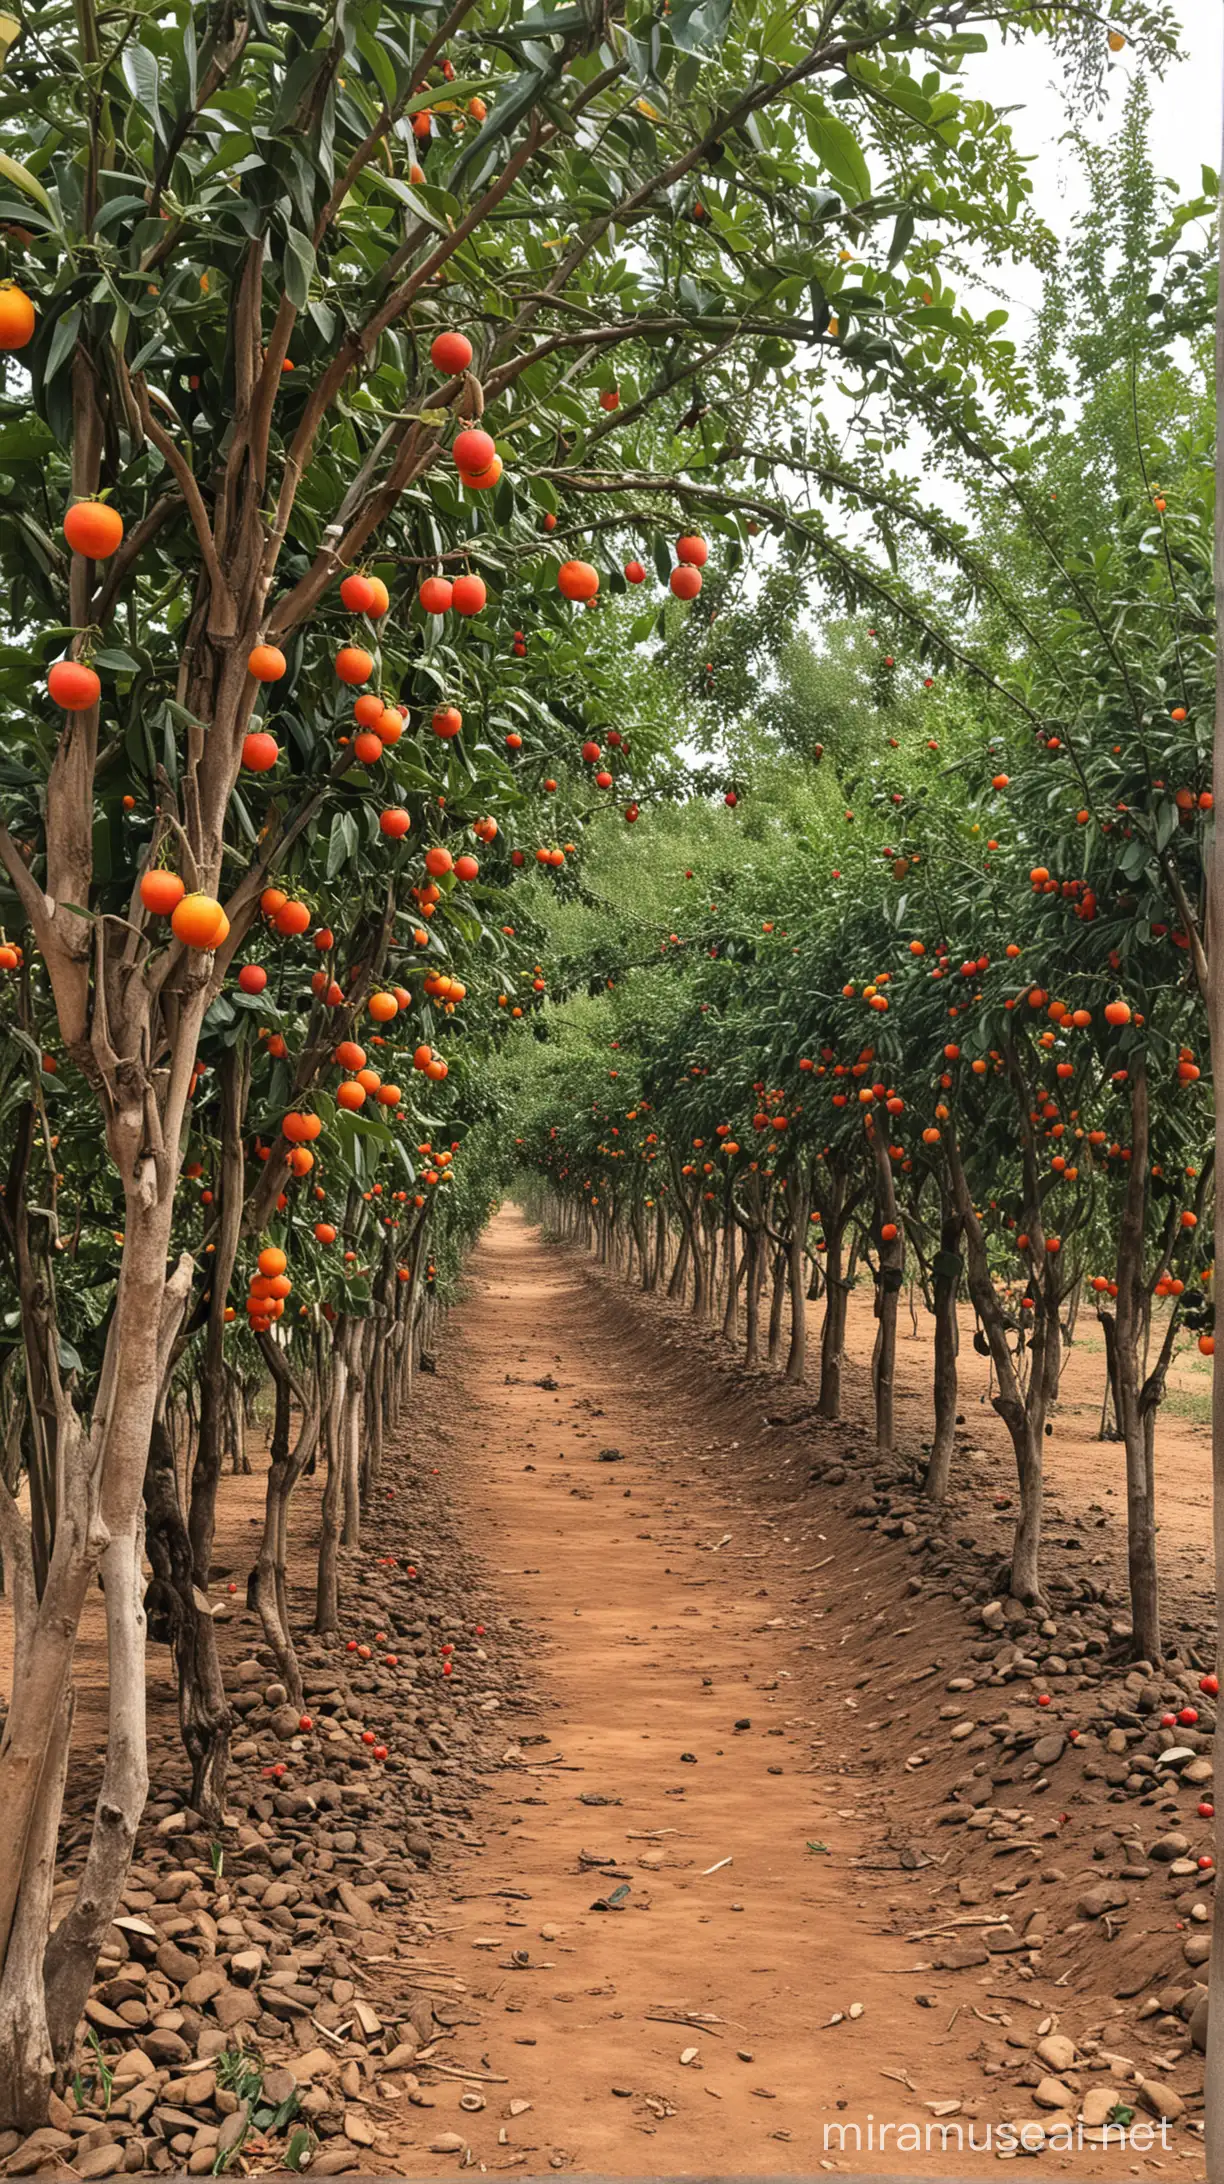 Vibrant Fruit Farming Scene in Africa